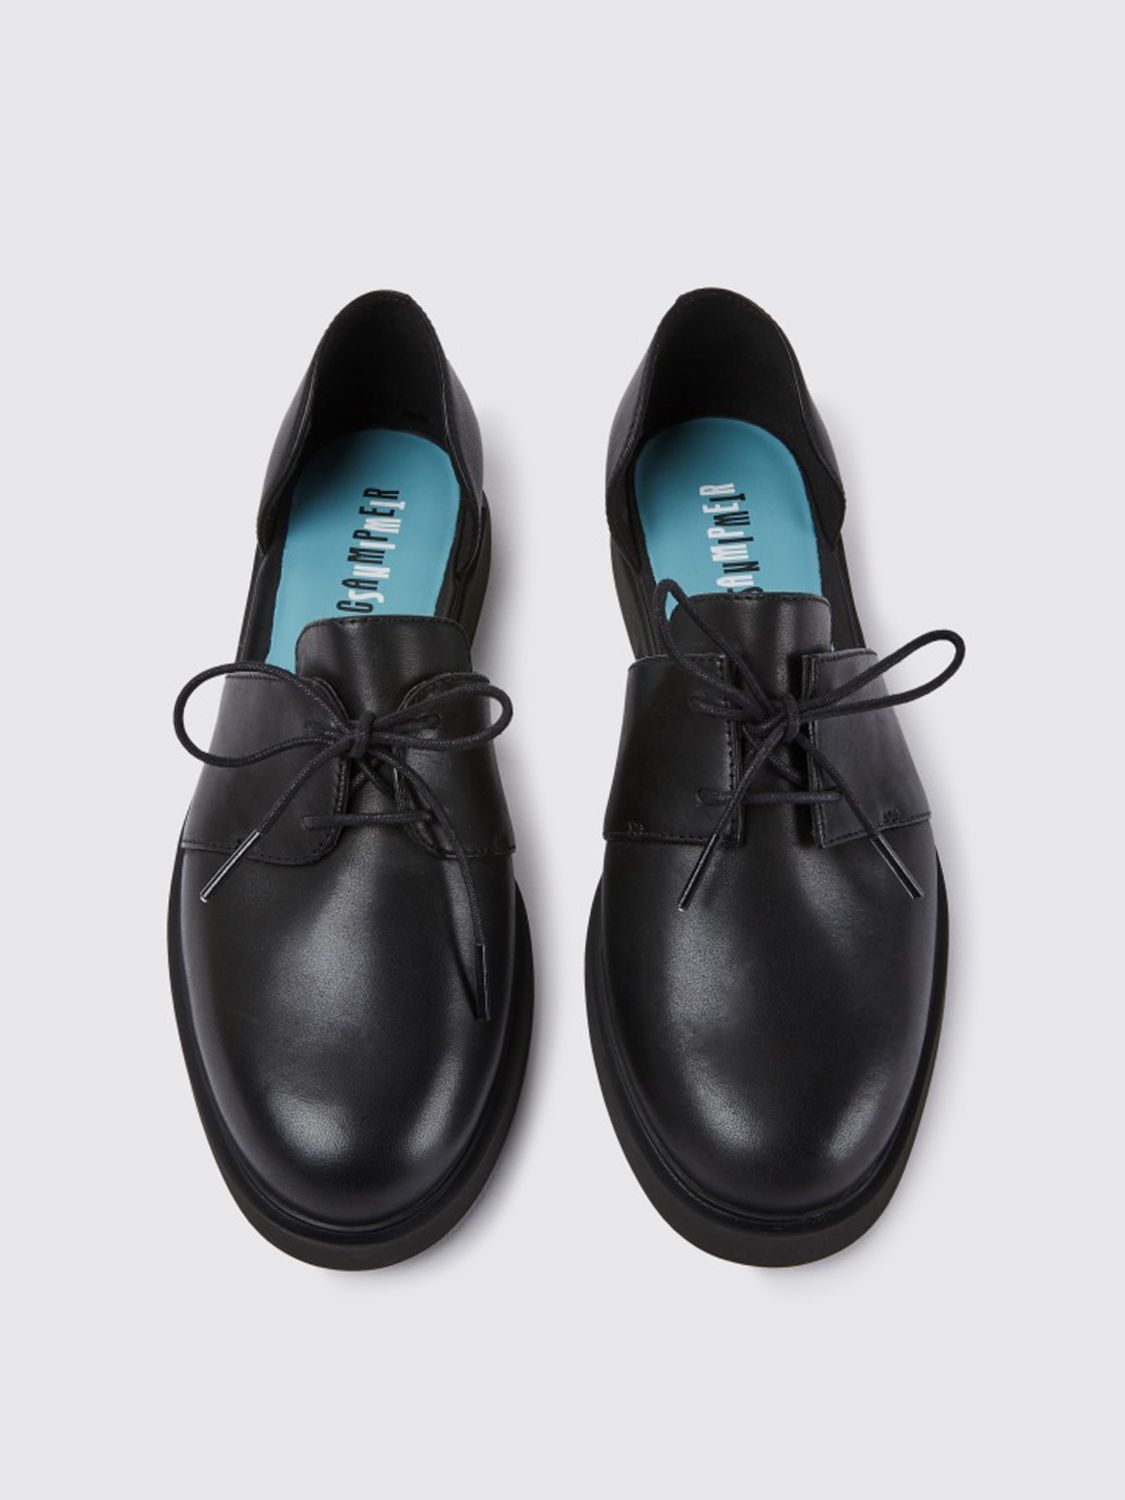 hek Cyberruimte Kapel CAMPER: Twins shoes in calfskin - Black | Camper flat shoes K201269-001  TWINS online on GIGLIO.COM